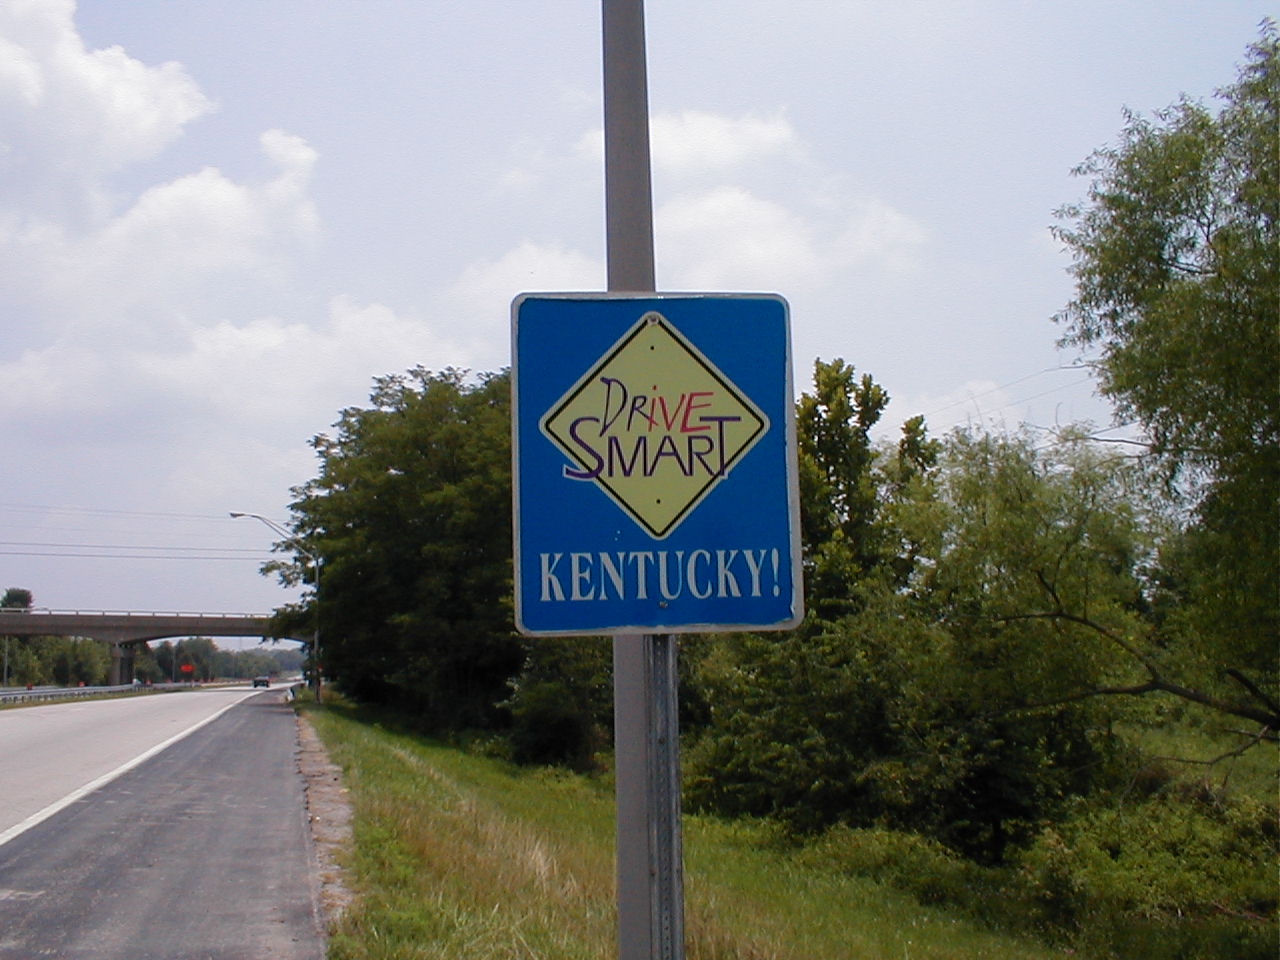 "Drive Smart Kentucky"